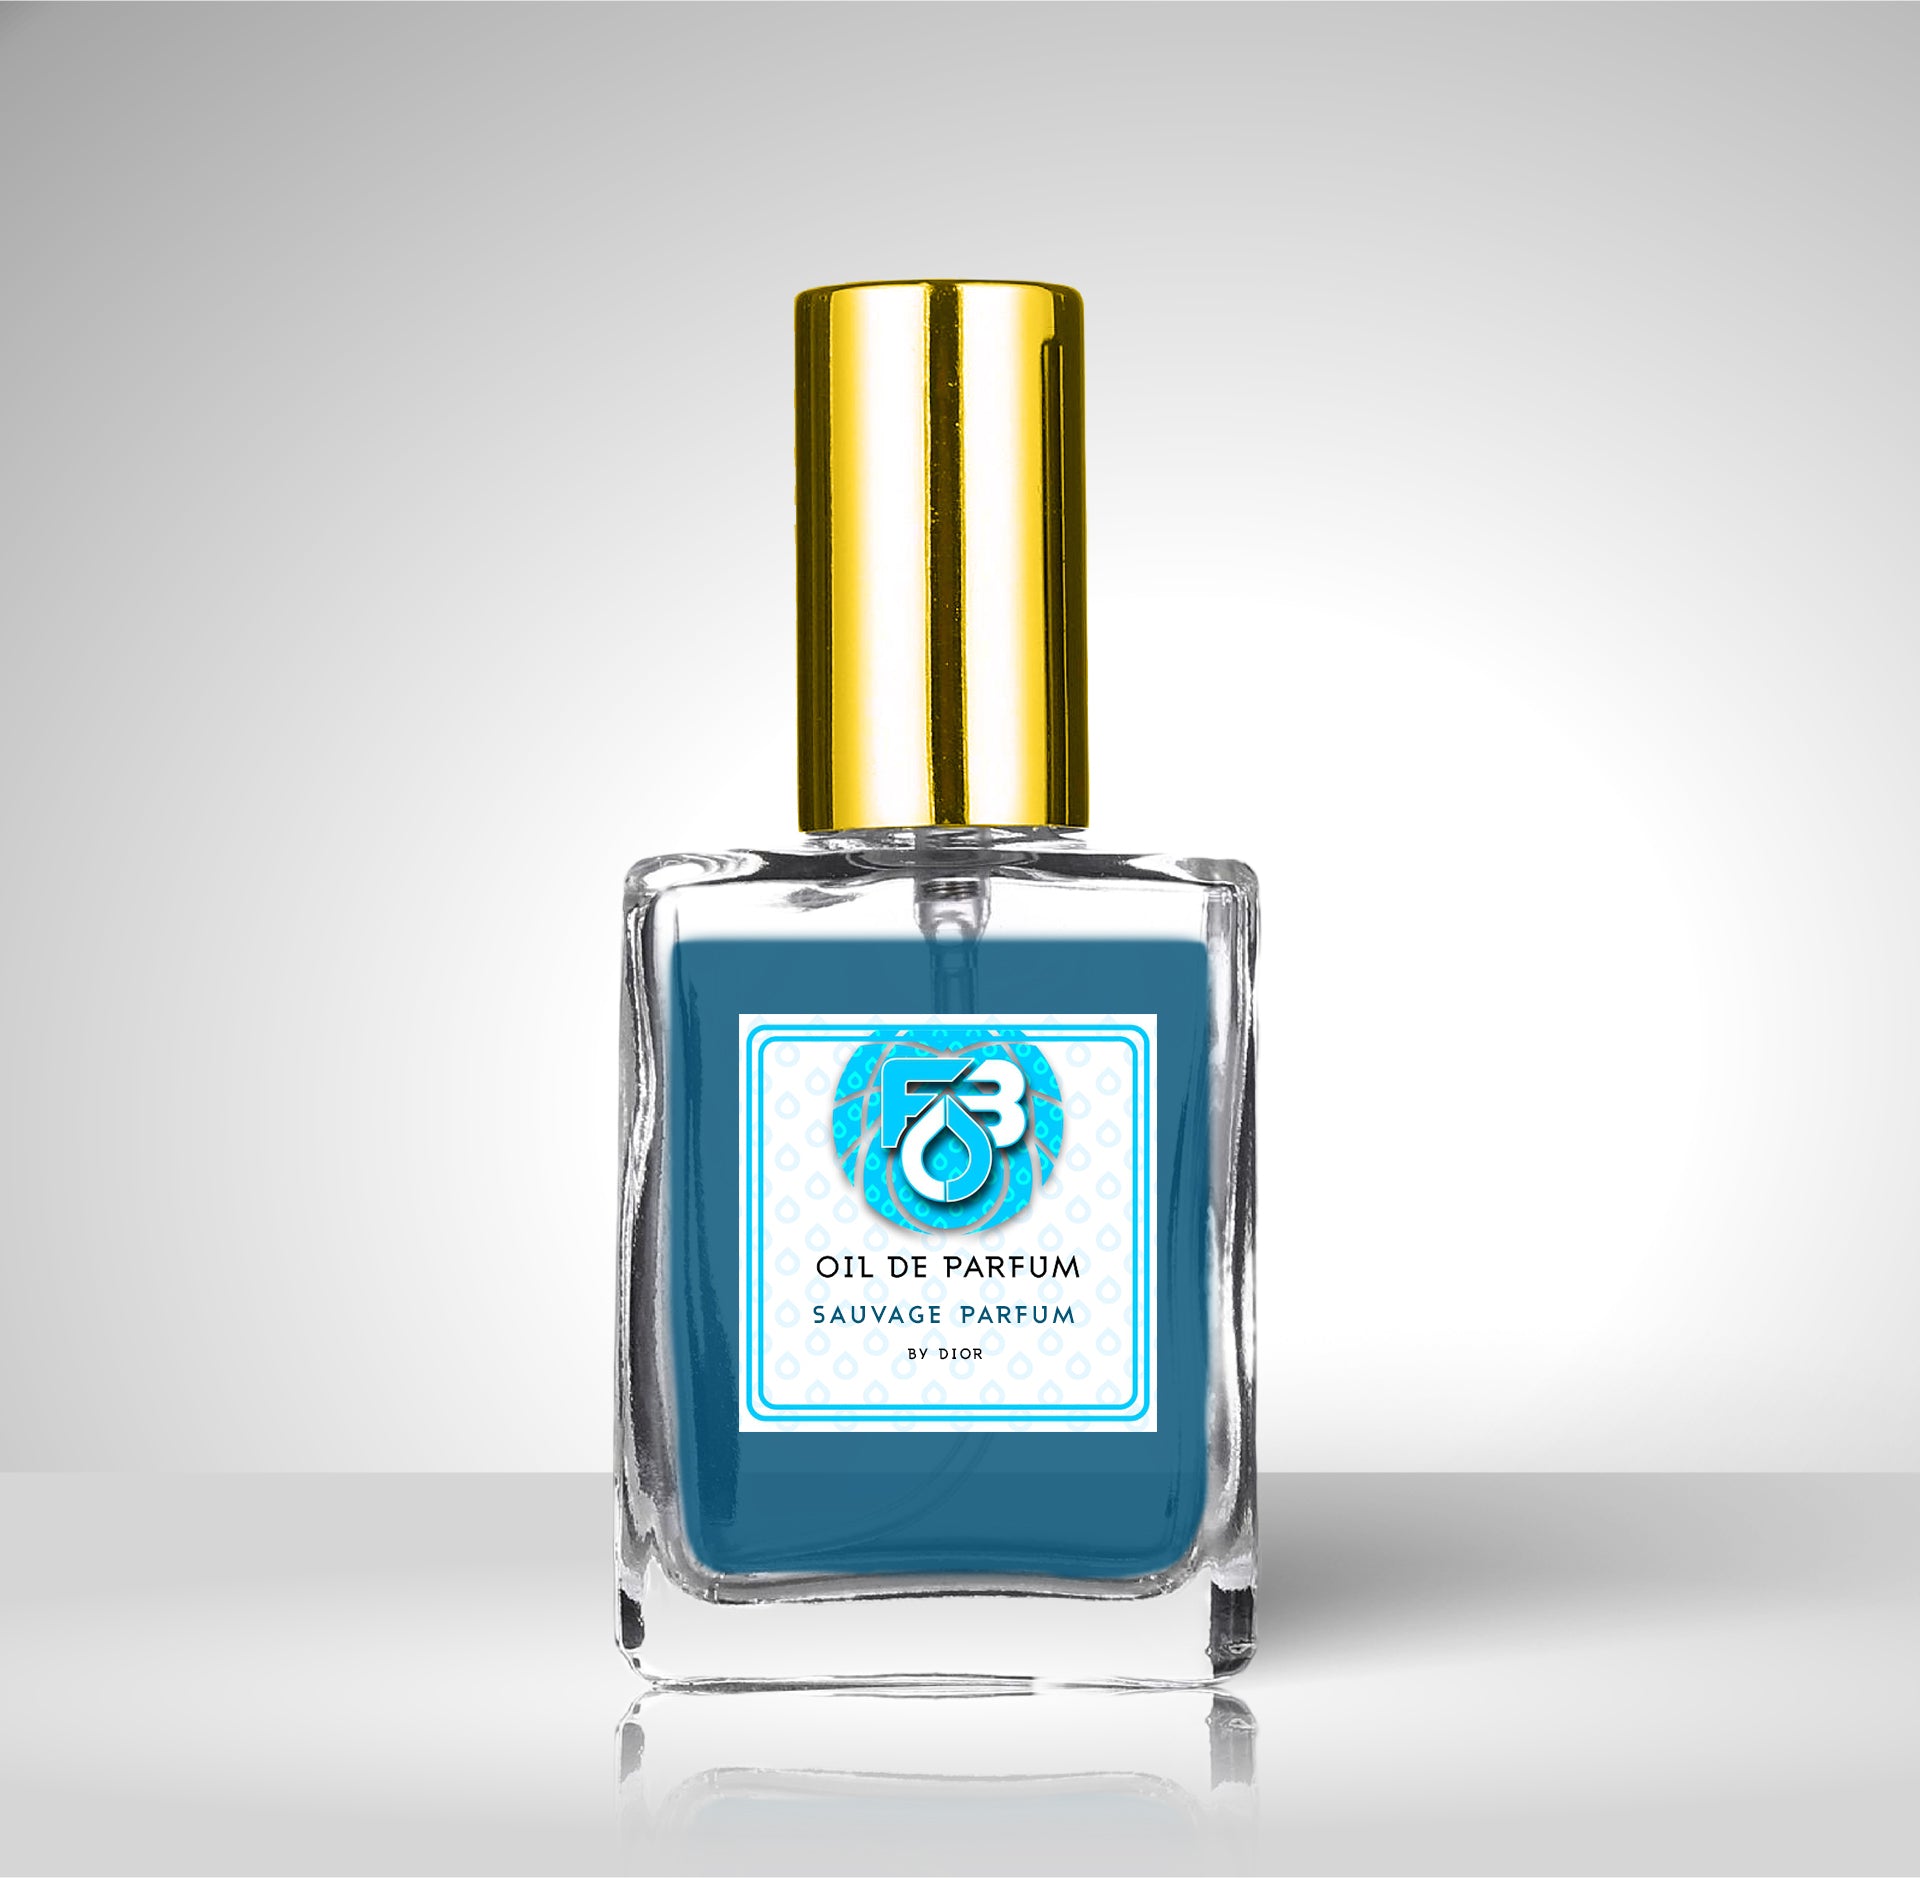 Compare Aroma to Sauvage Parfum®